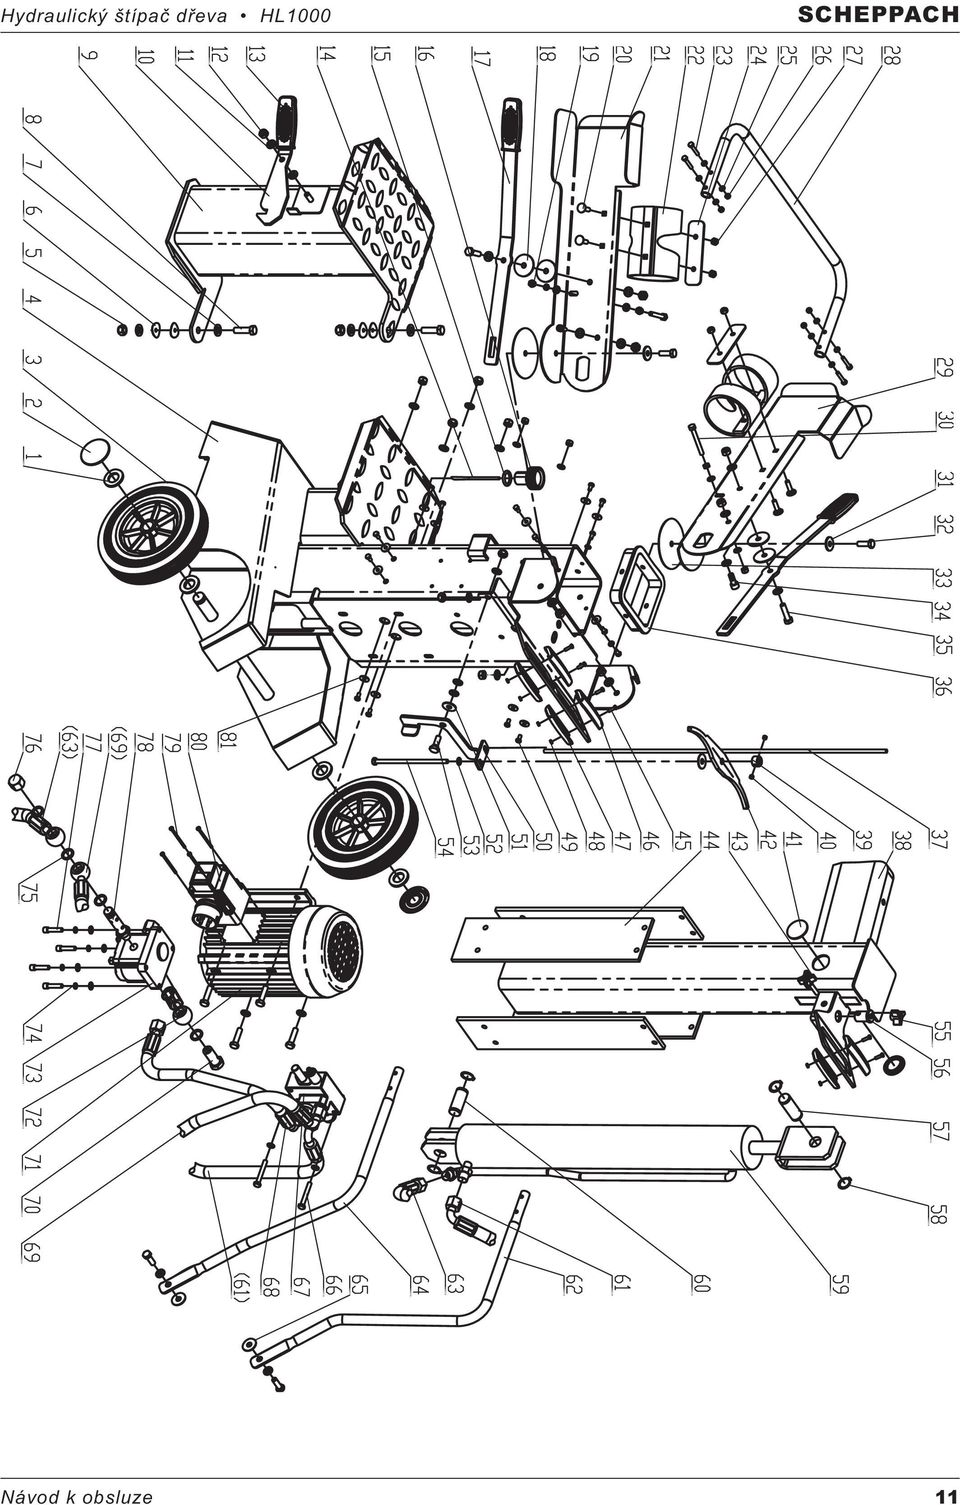 Návod k obsluze pro hydraulický štípač dřeva HL 1000 (Scheppach edition) -  PDF Free Download